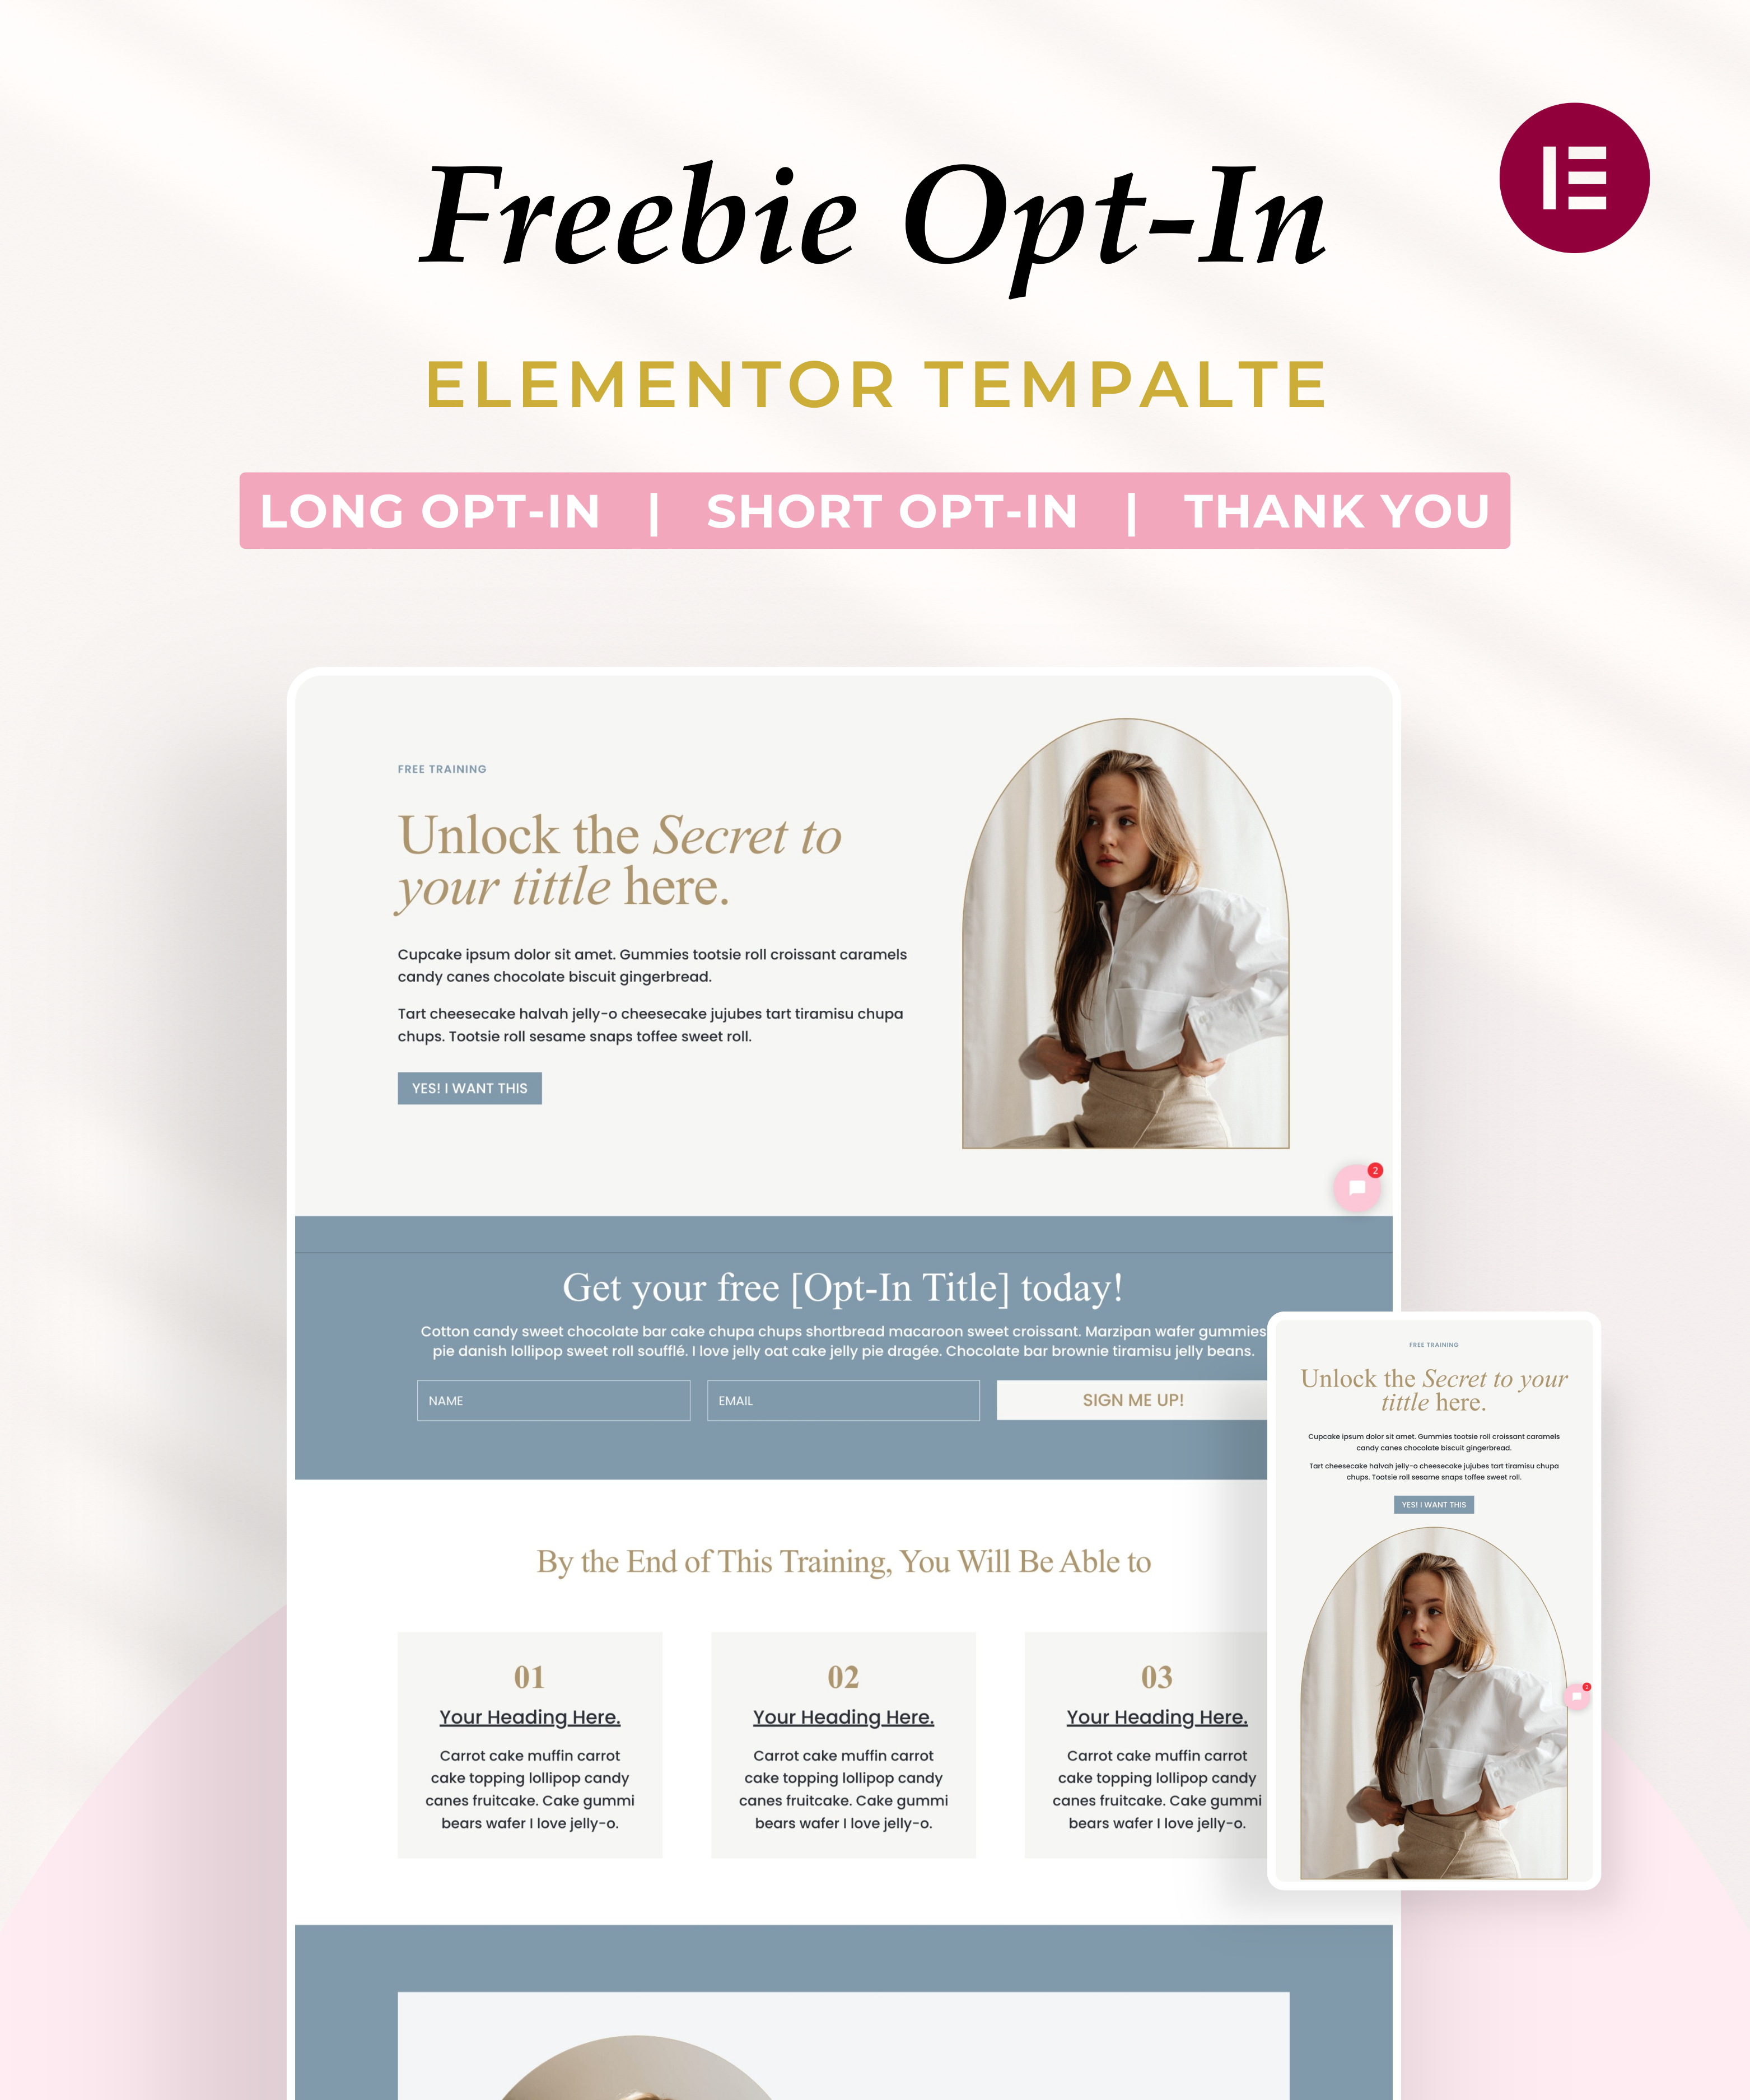 Freebie Opt-In Divi Template